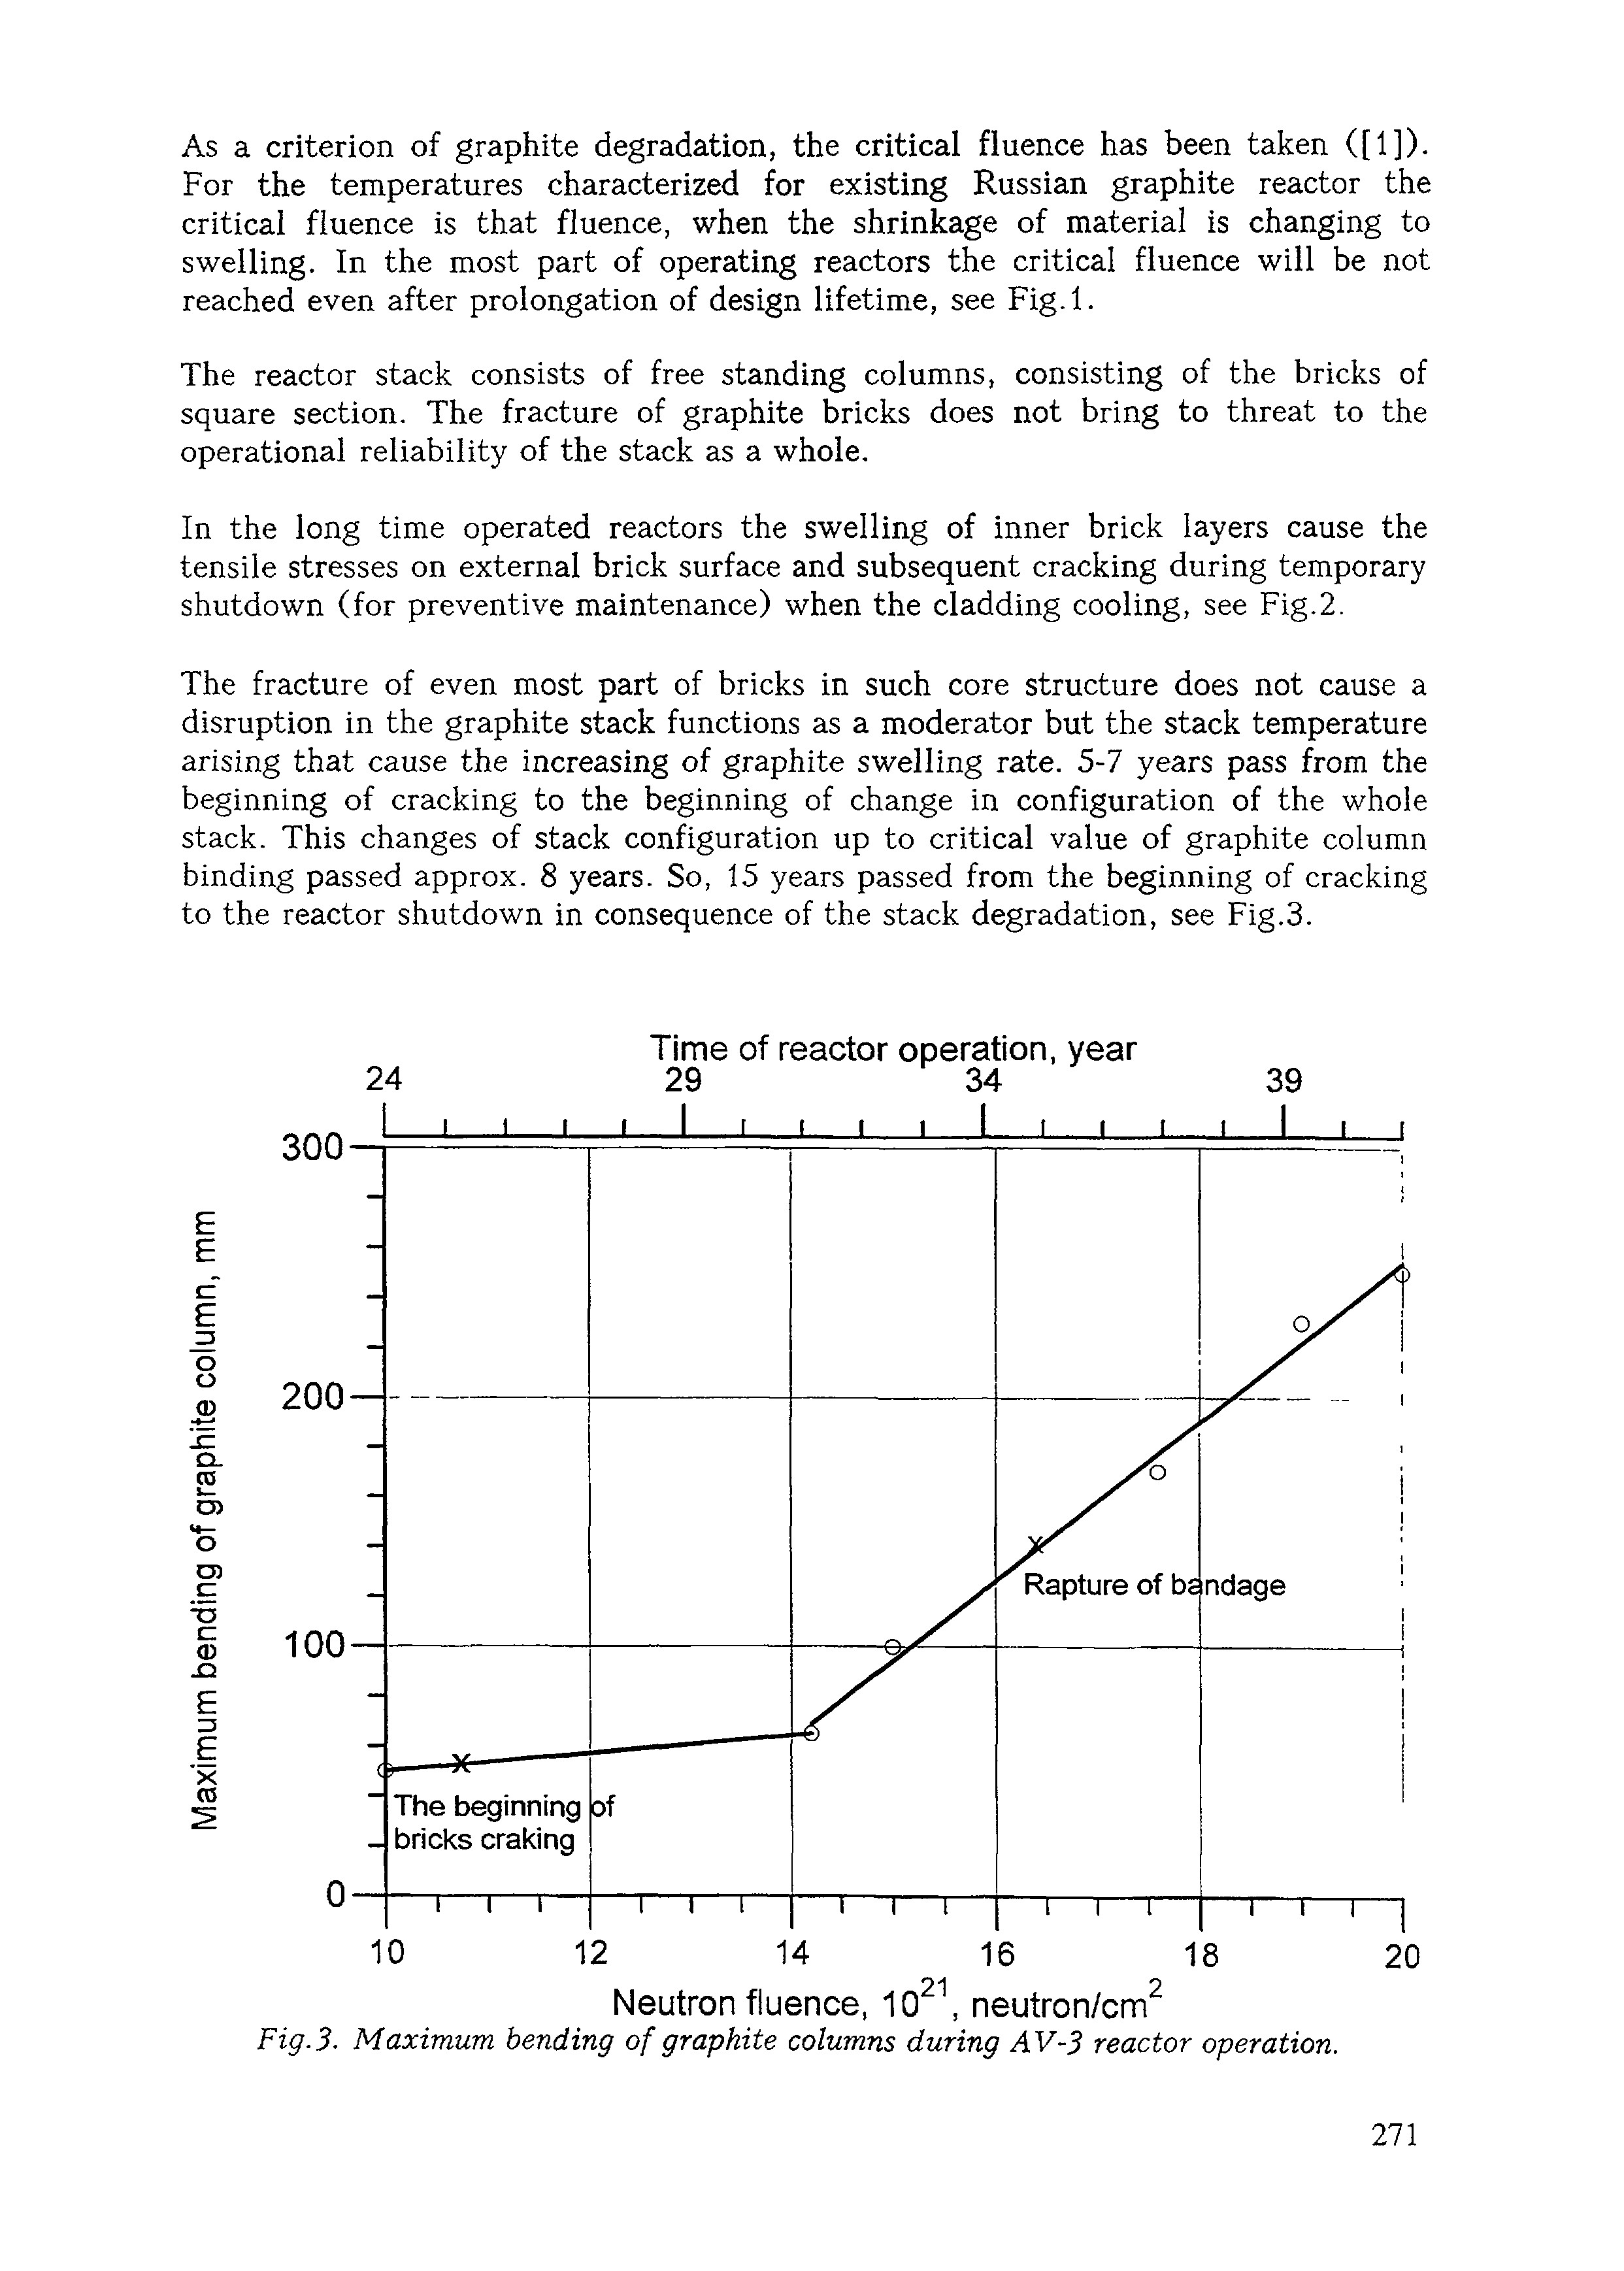 Fig. 3. Maximum bending of graphite columns during AV-3 reactor operation.